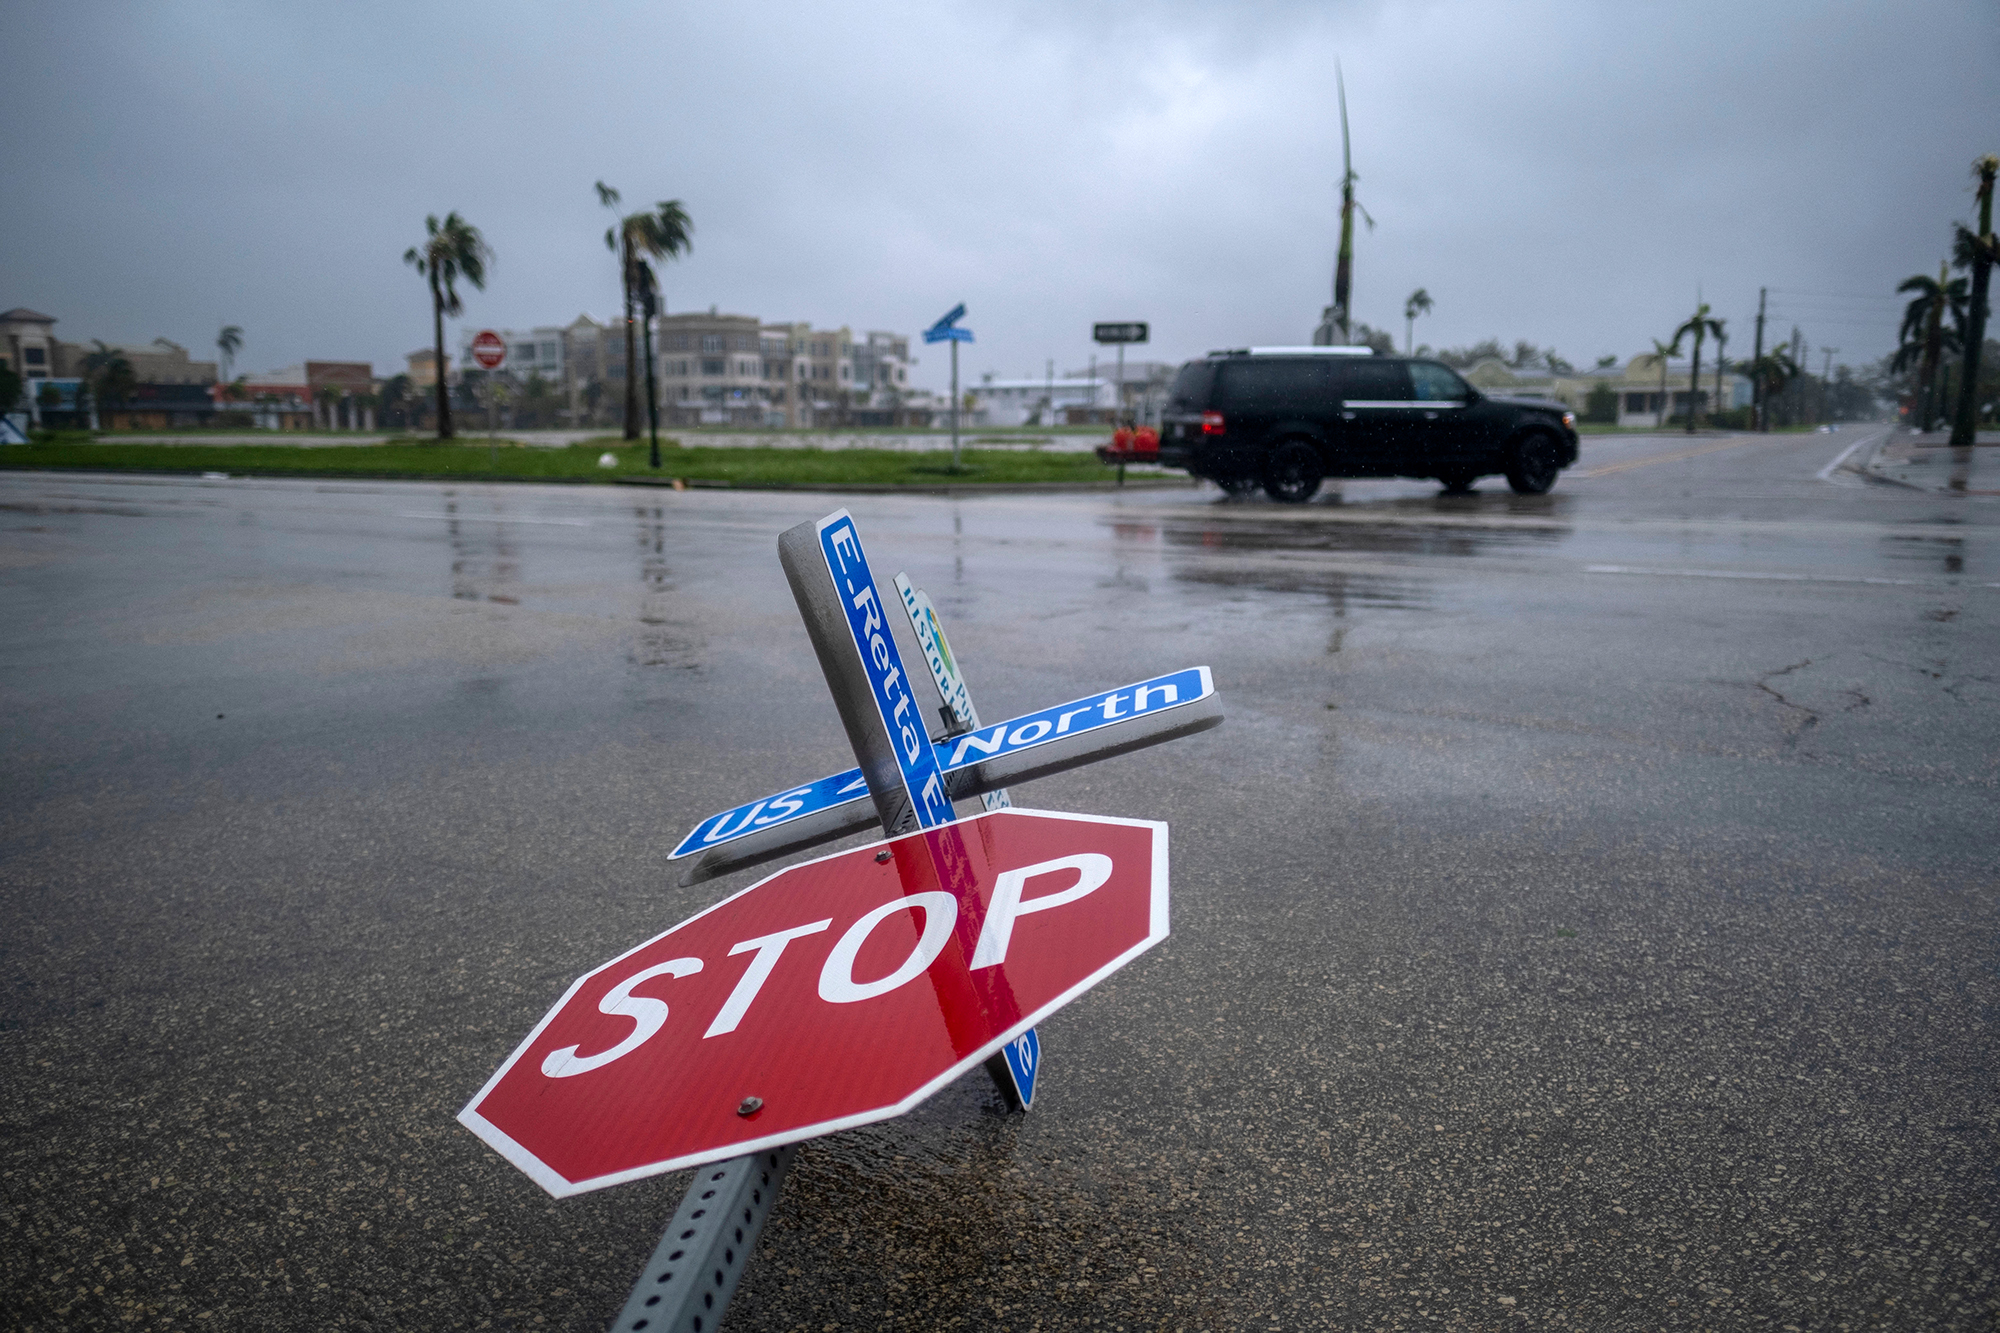 Hurrikan Ian auf Küste von Florida getroffen